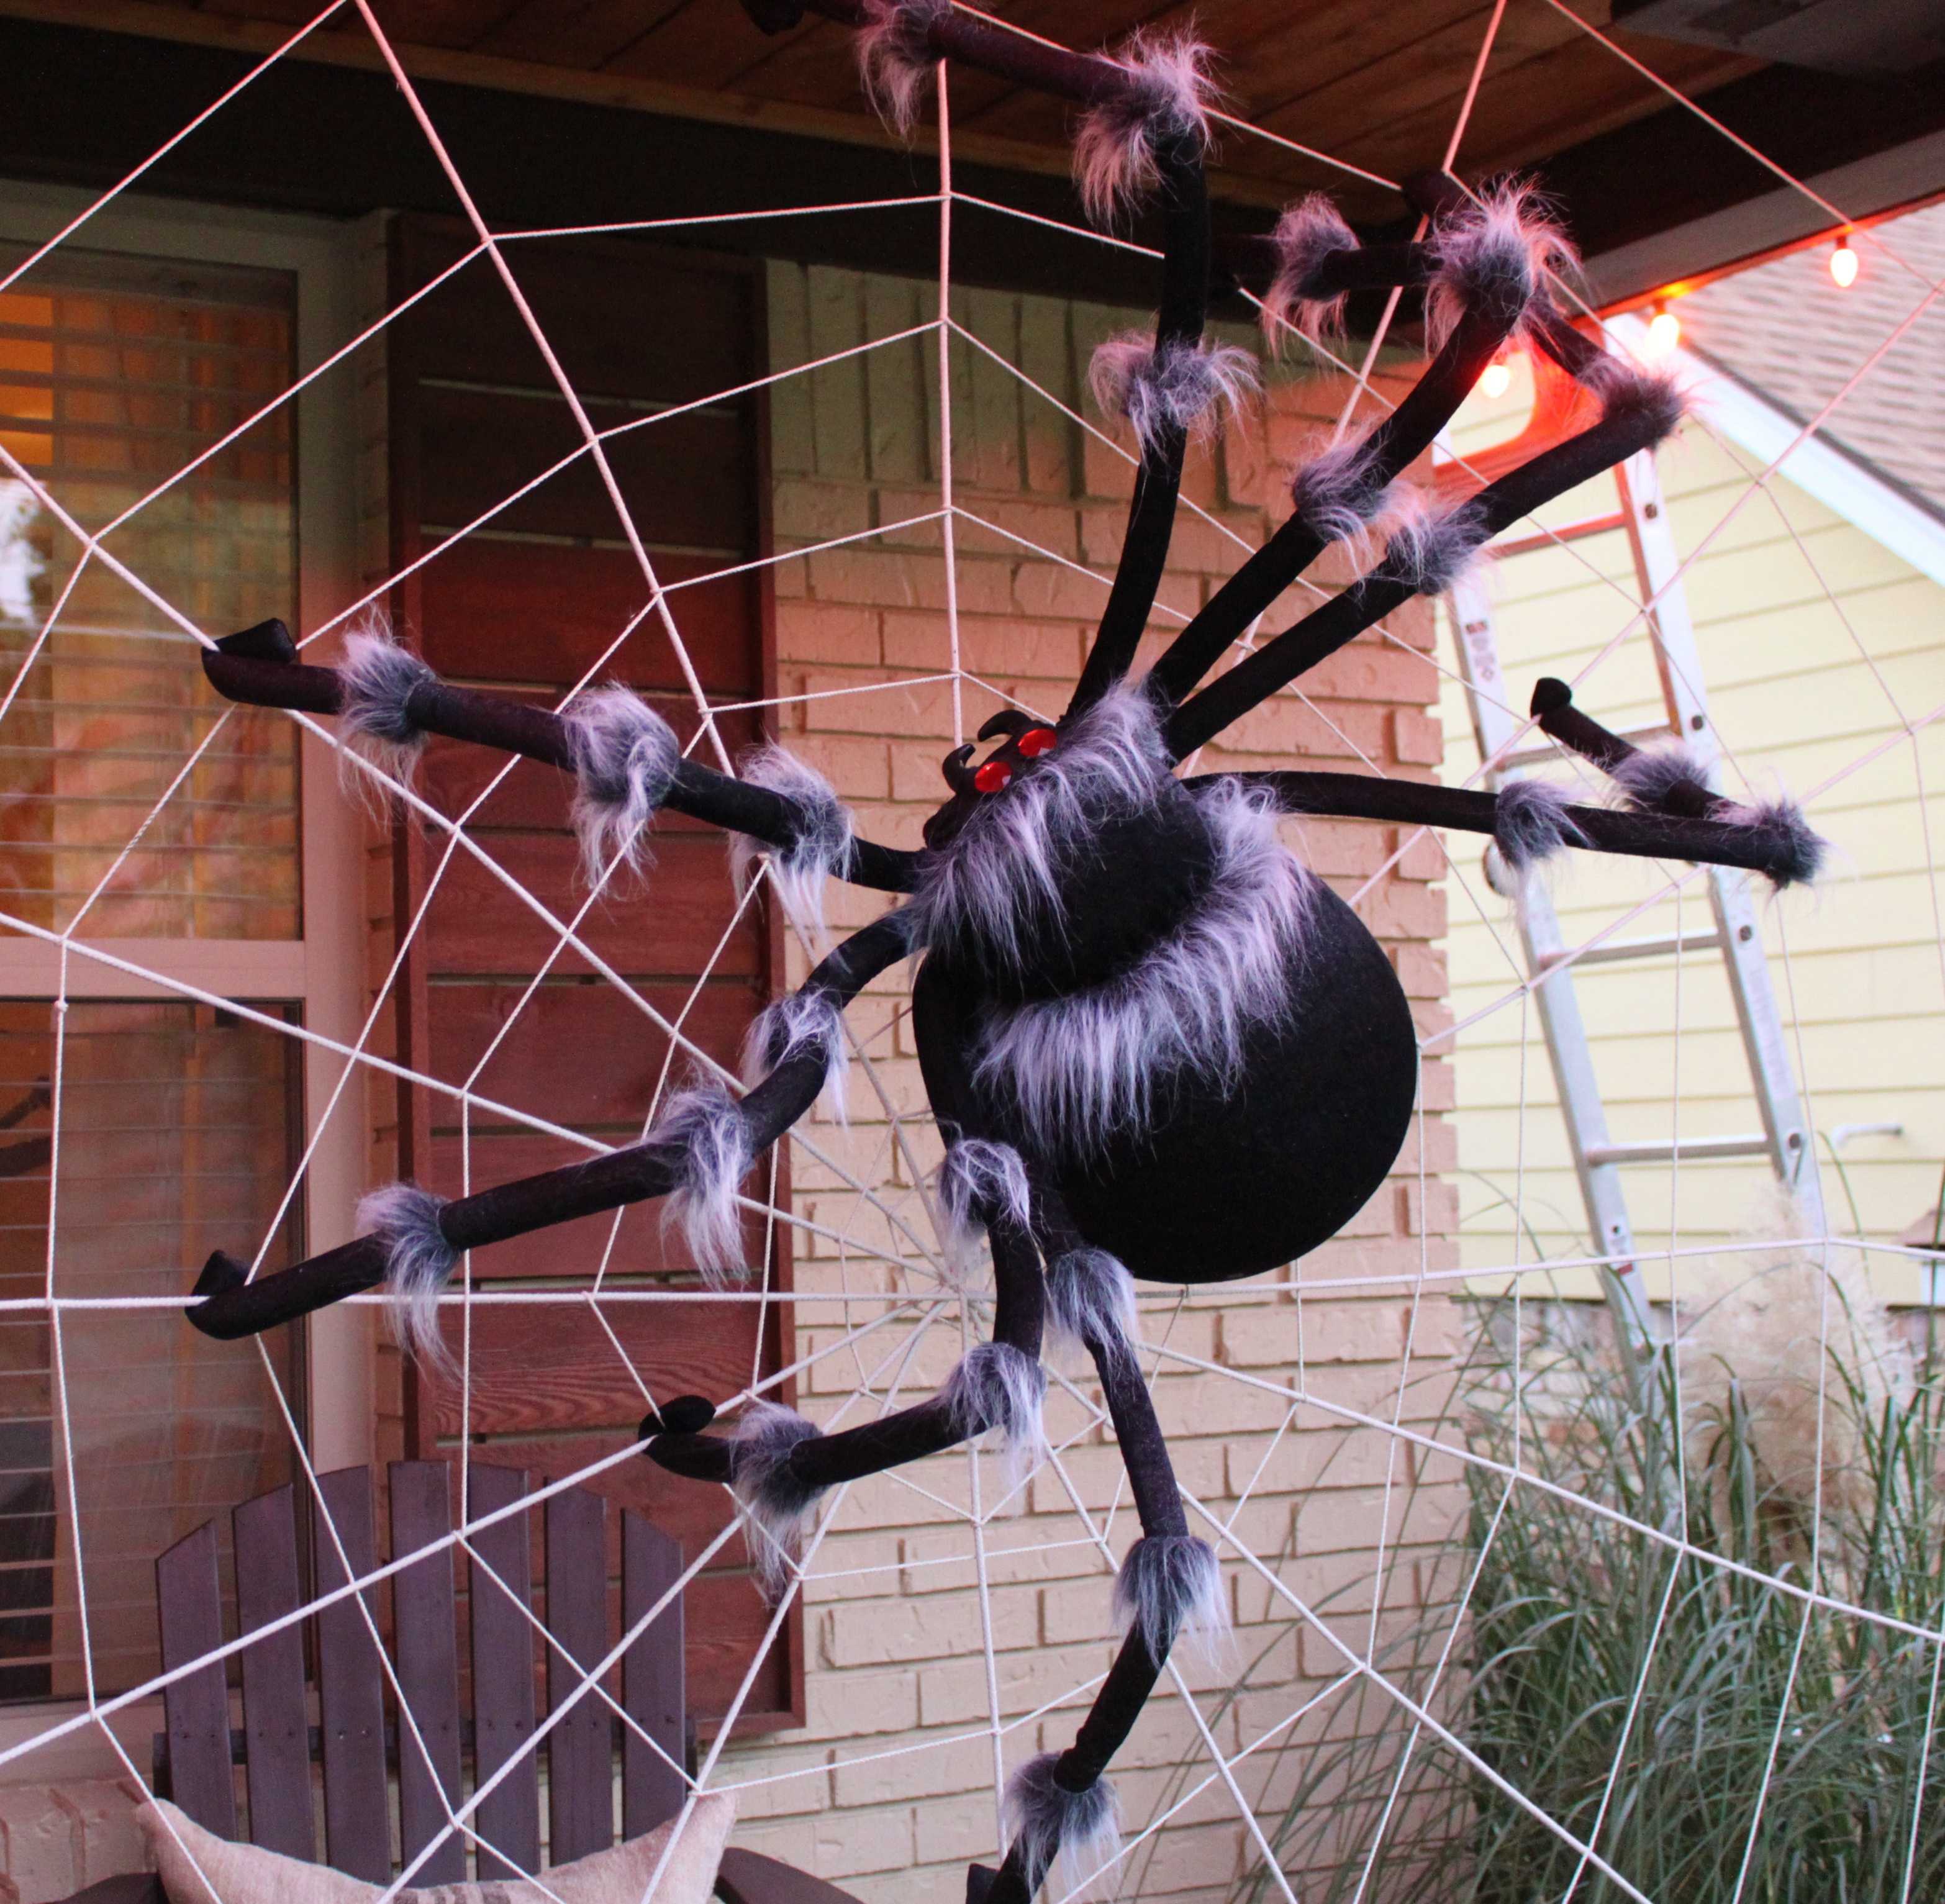 К чему снятся пауки: большие и маленькие, укус паука, огромный тарантул